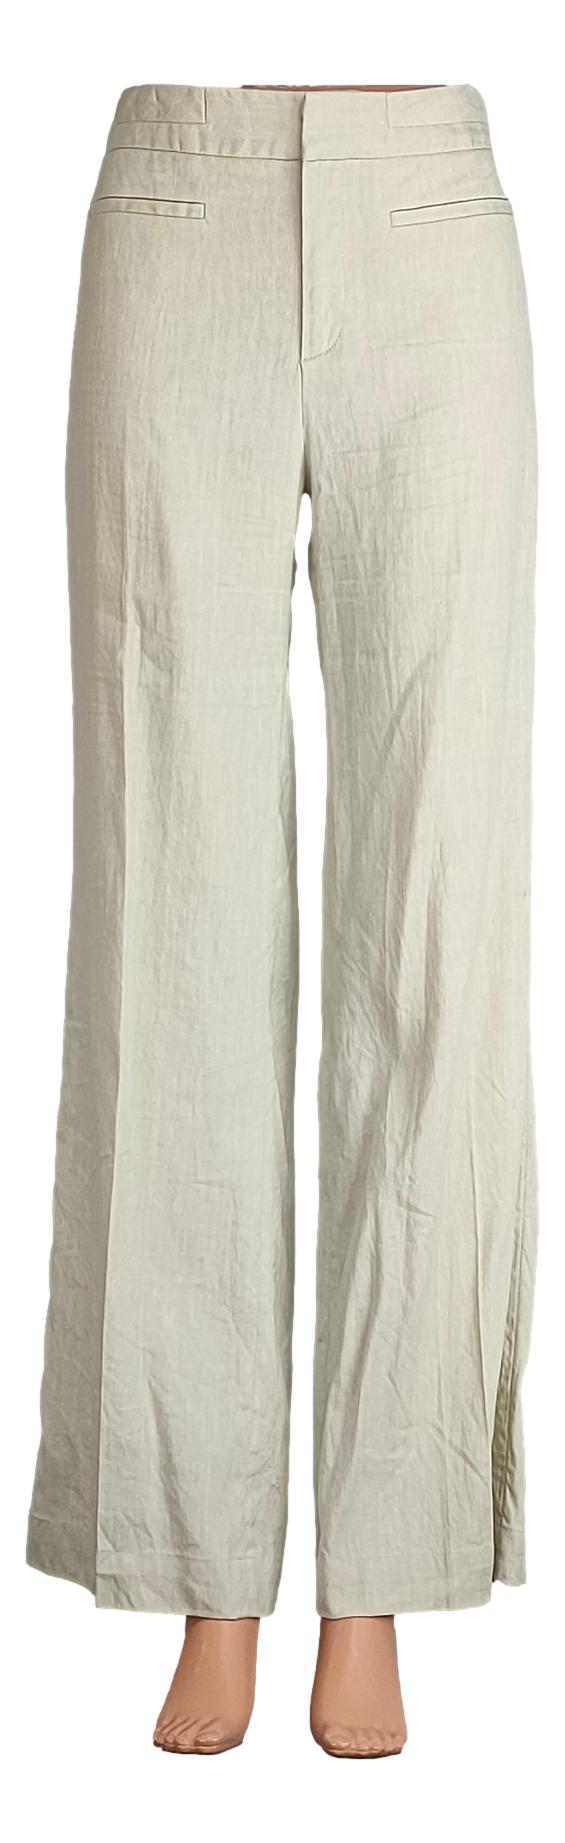 Pantalon Comptoir des Cotonniers - Taille 38